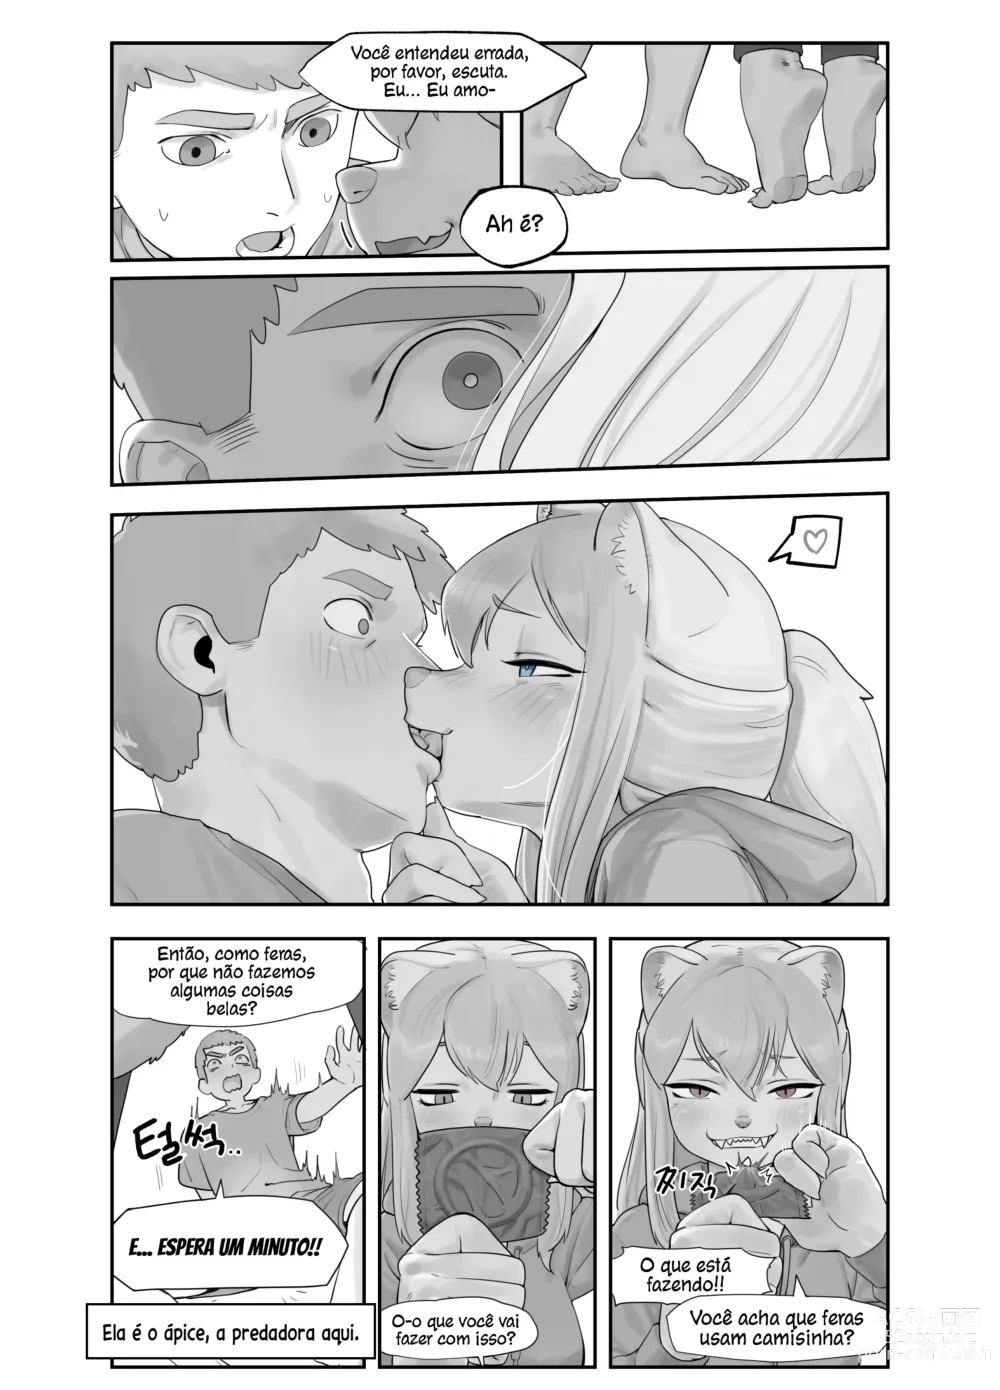 Page 6 of doujinshi Uma Amiga de Infância Suspeitosamente Erótica